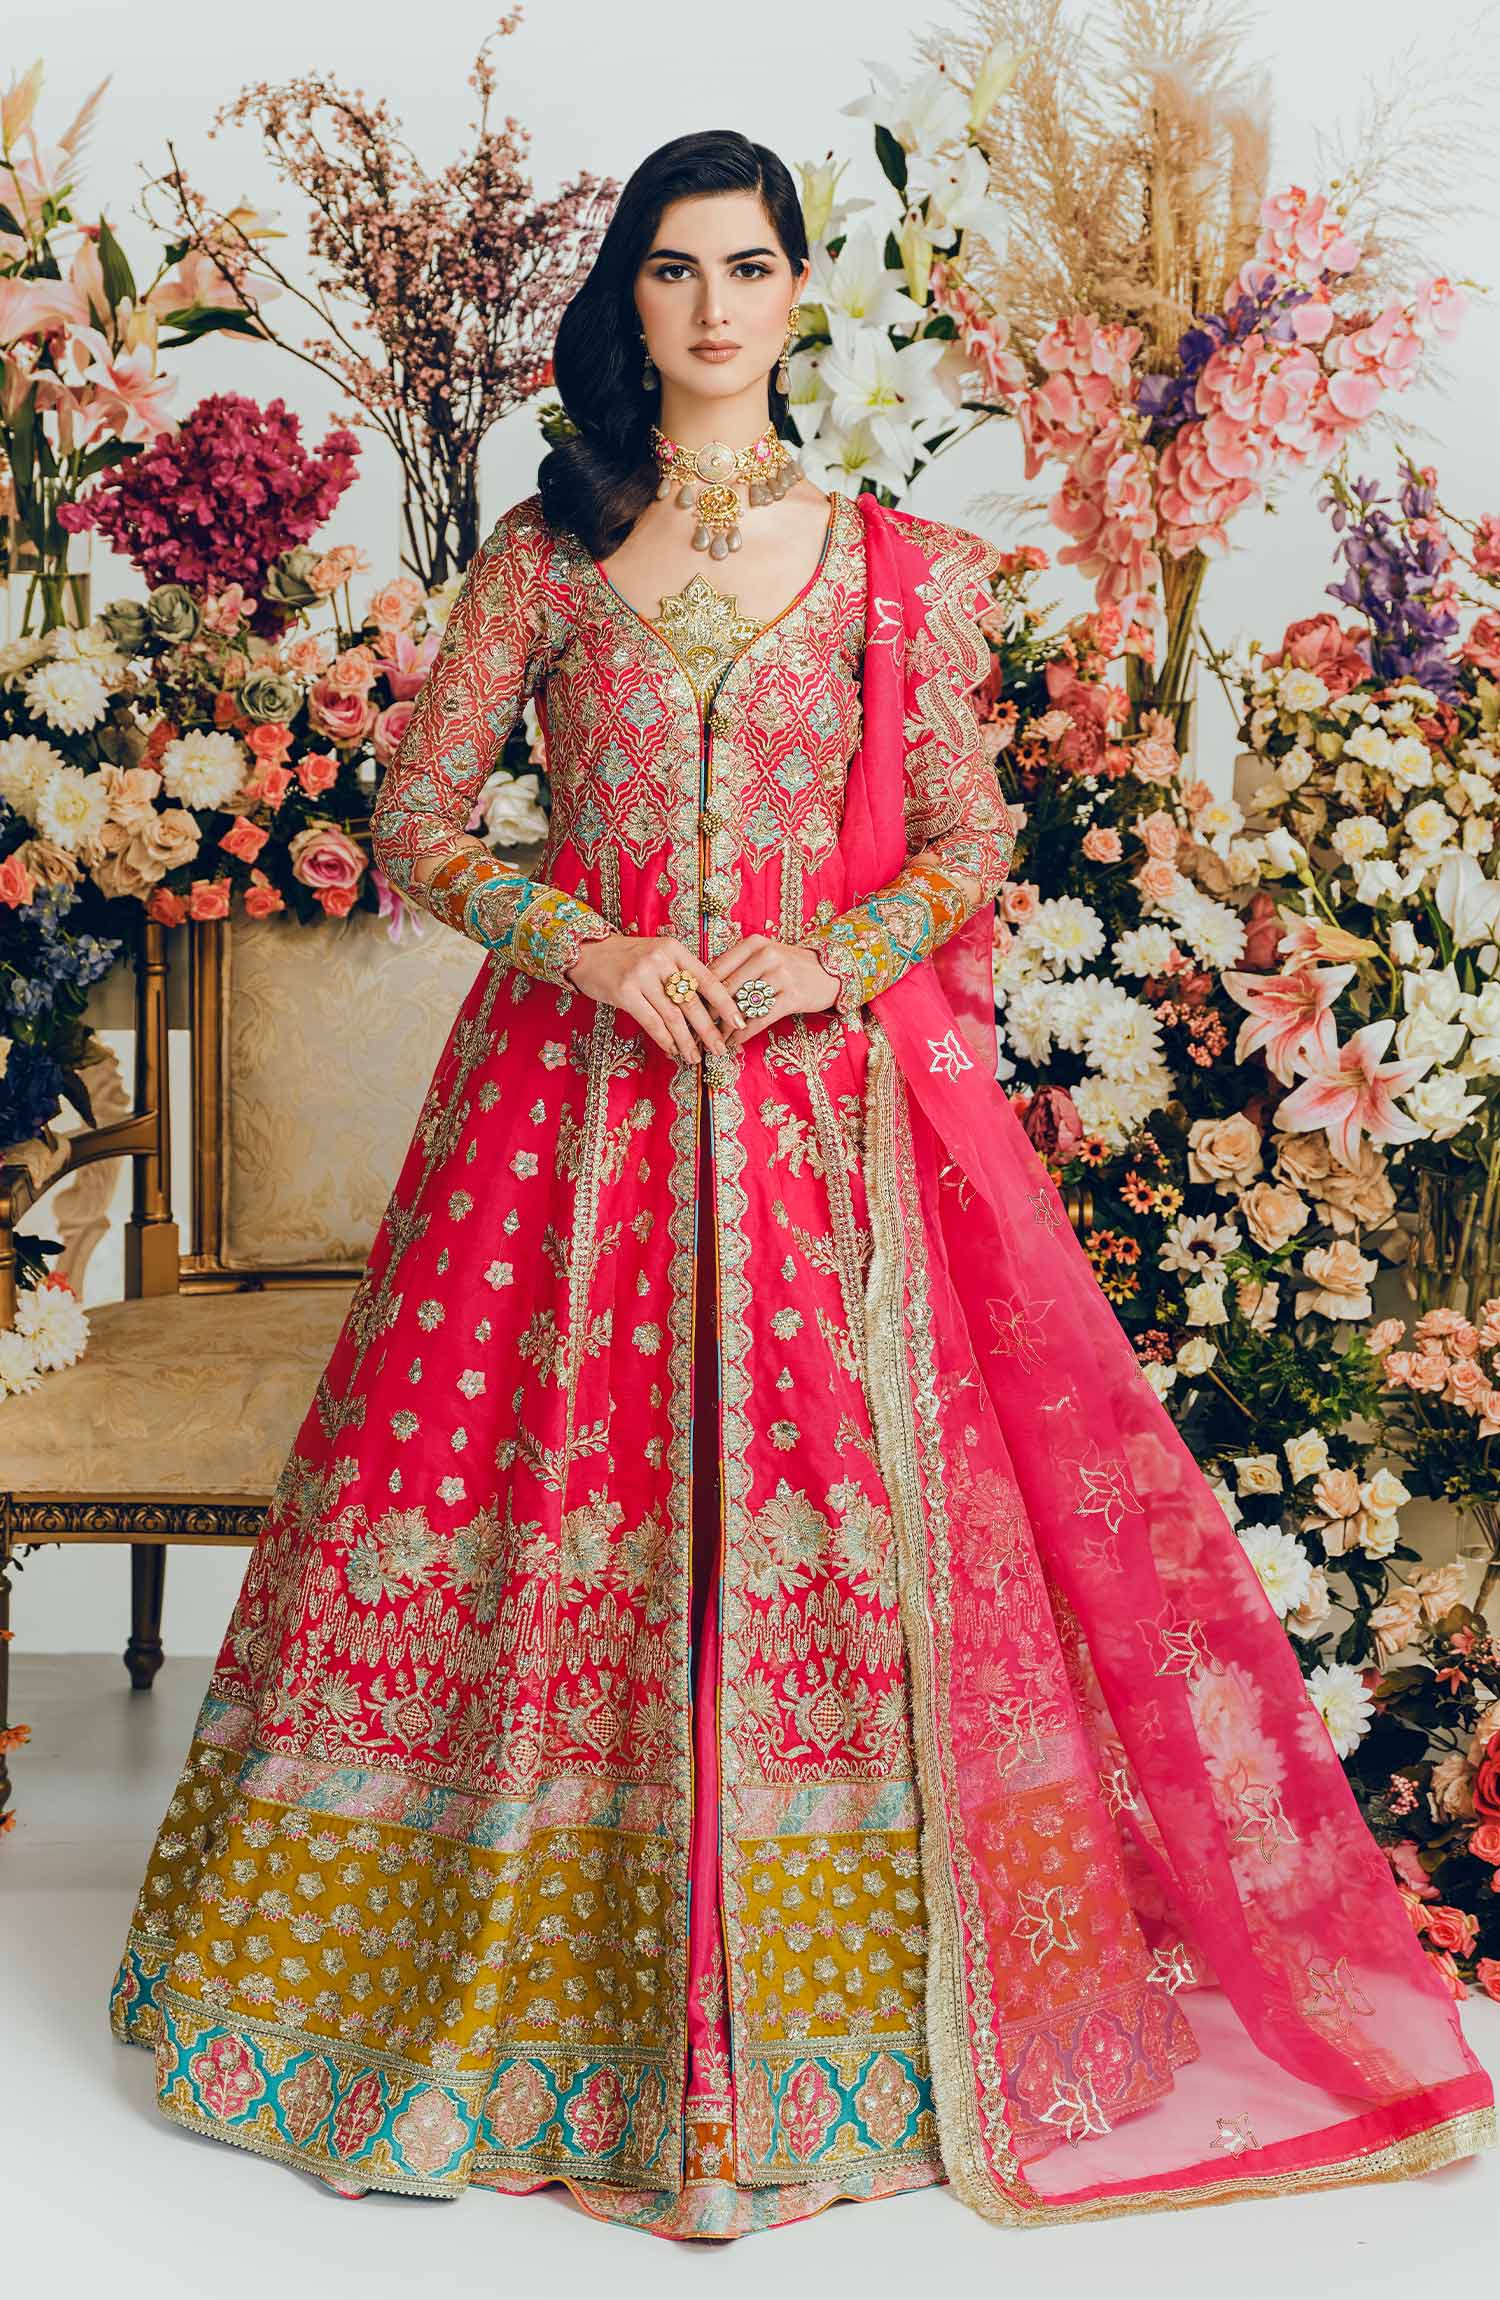 Buy Formal Chiffon Dresses For Women Online In Pakistan | Jazmin